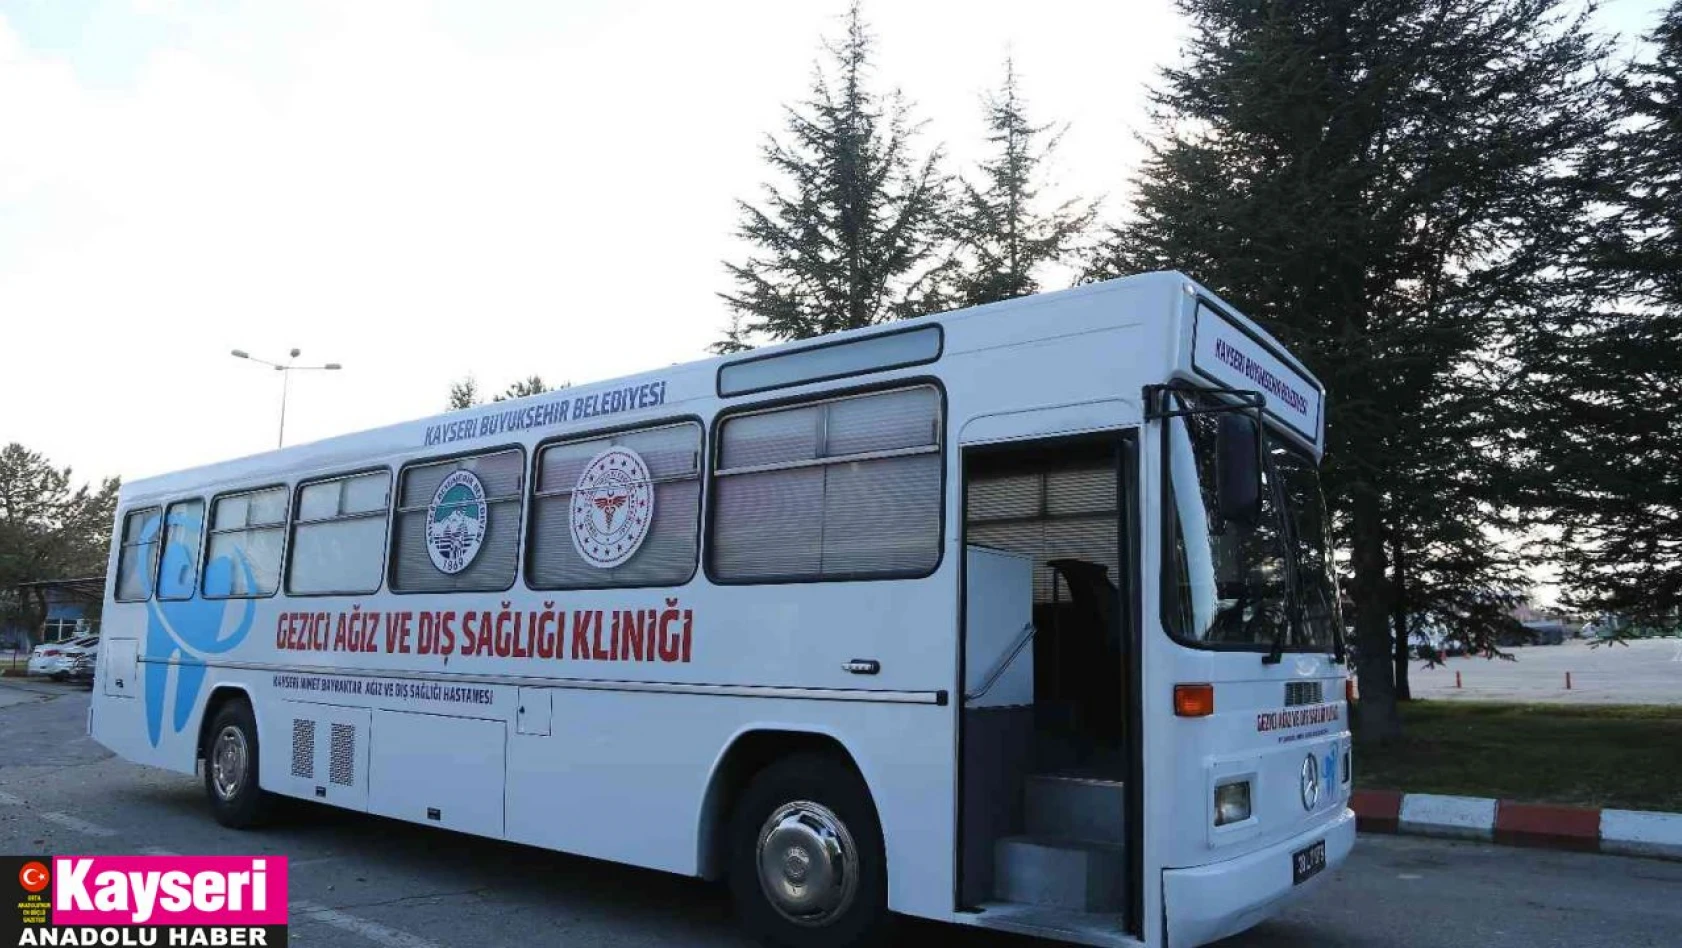 Kayseri Büyükşehir'den 'Gezici Ağız ve Diş Sağlığı Kliniği'